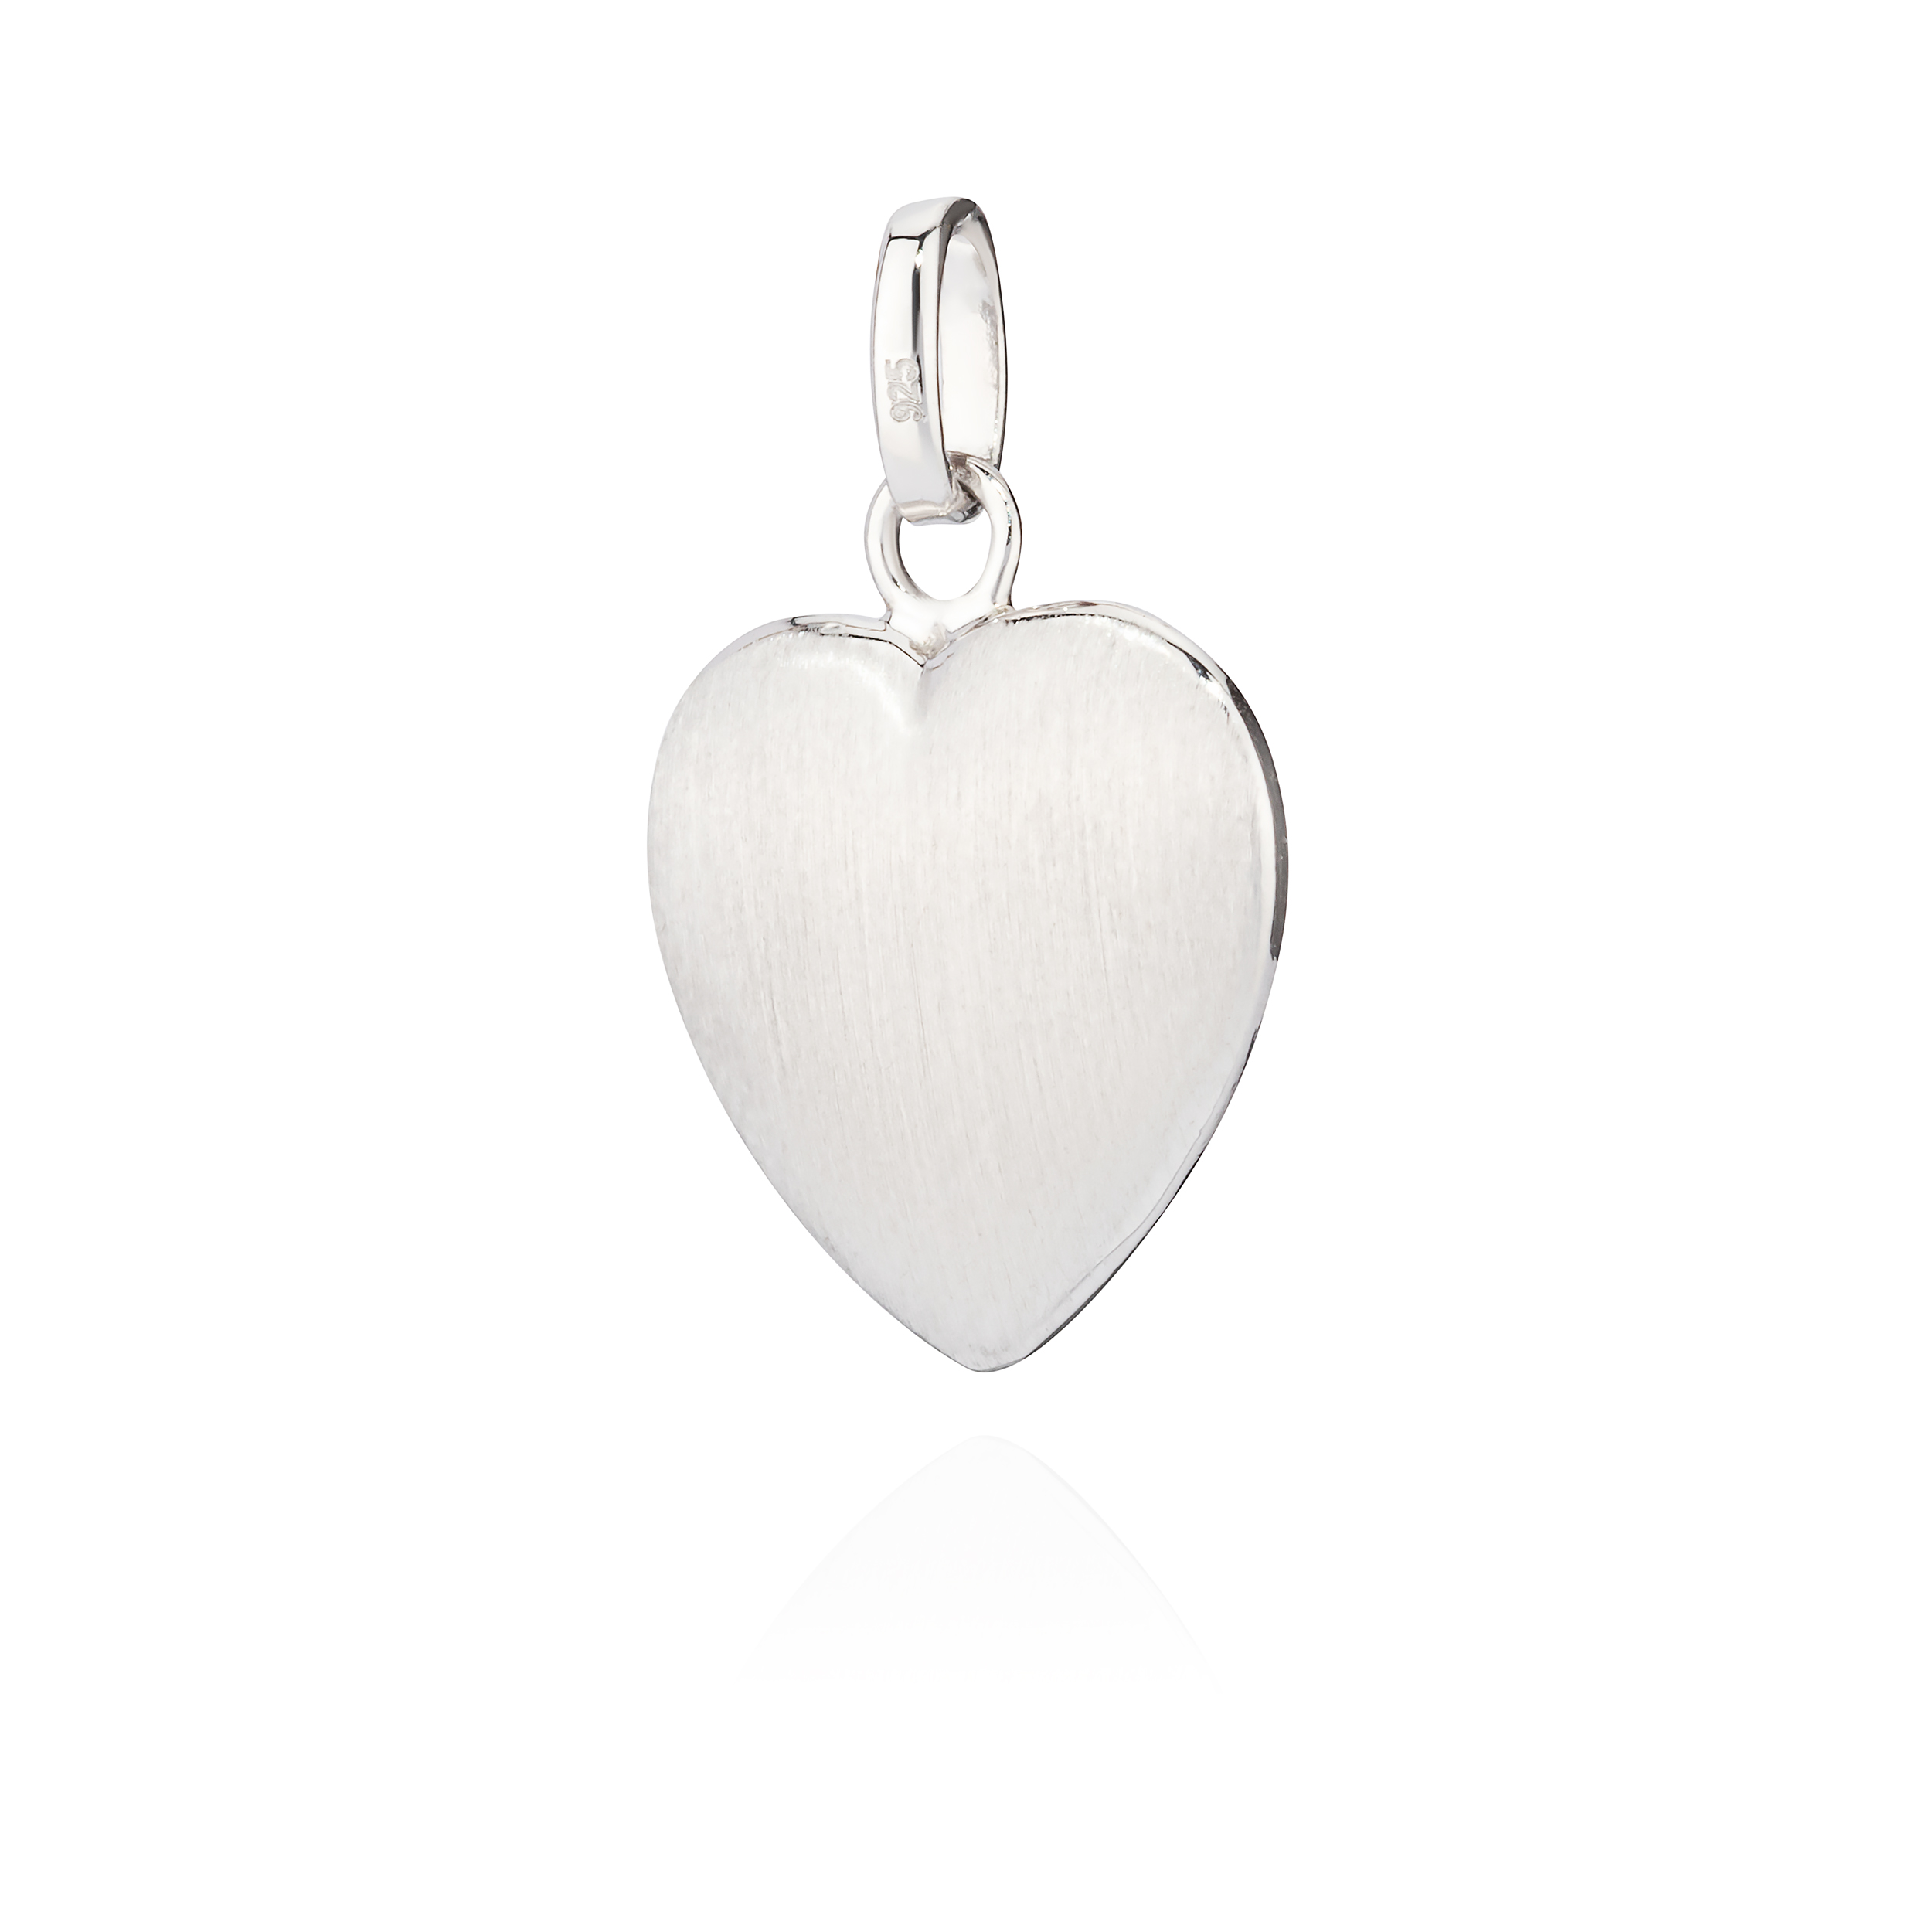 Kettenanhänger kleines Herz eBay | Silber 925 Amulett anlaufgeschützt glanz-matt